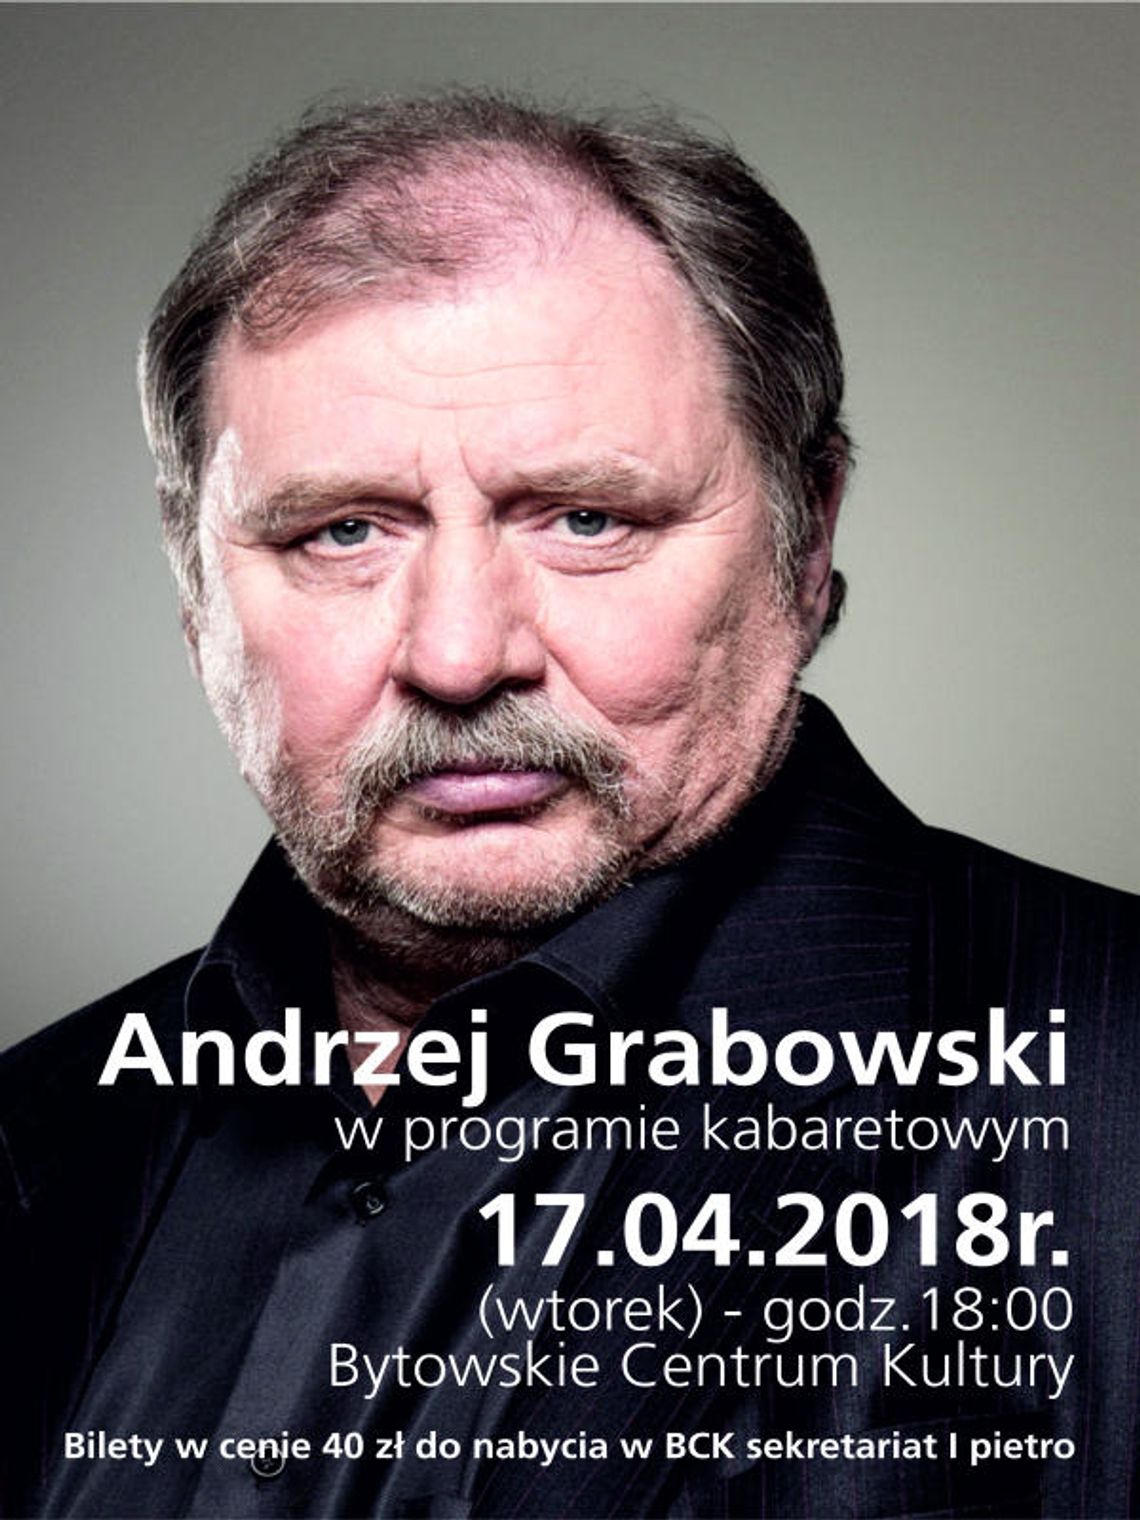 Występ kabaretowy Andrzeja Grabowskiego.